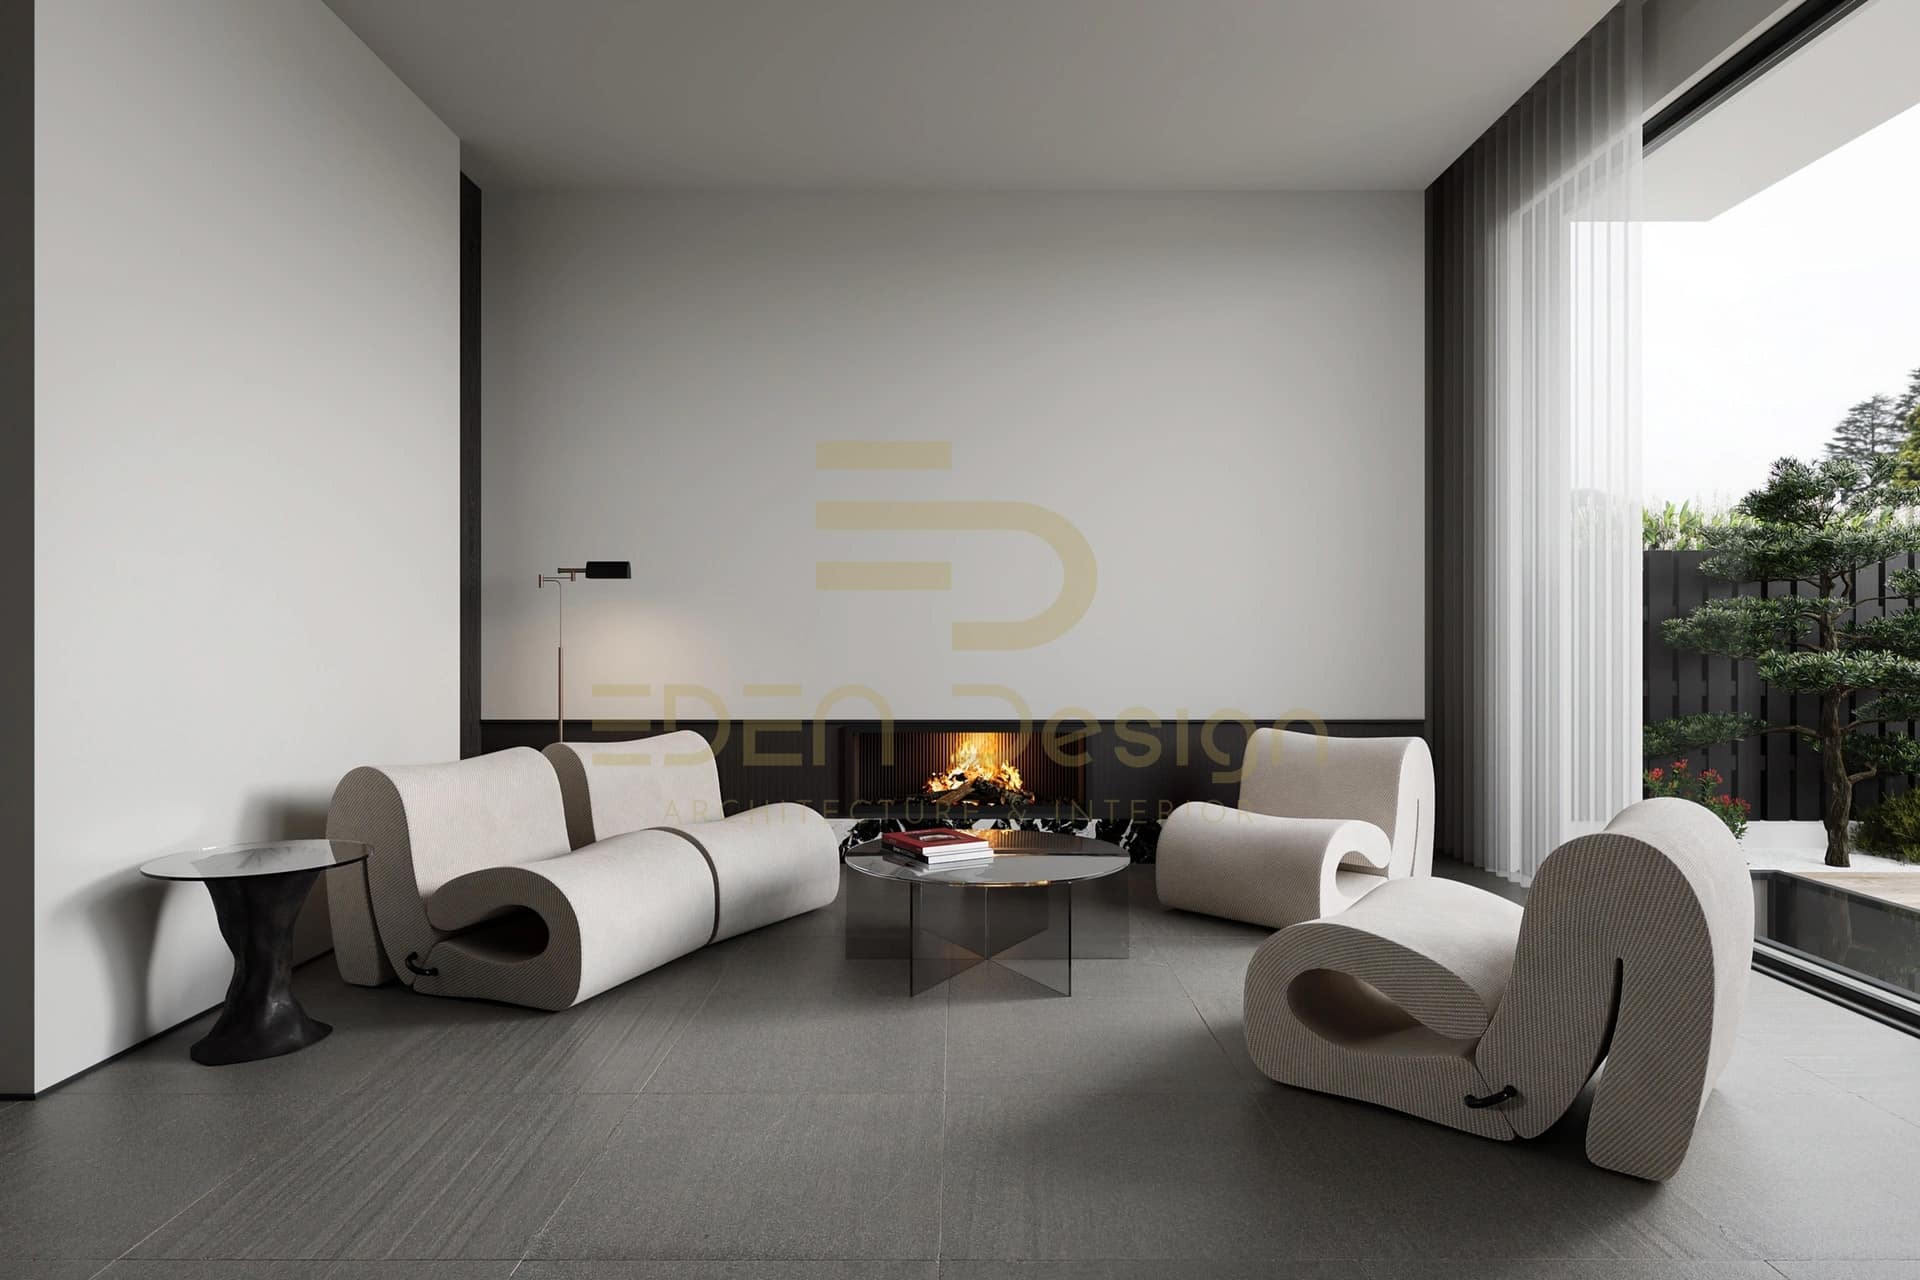 Sofa được thiết kế độc đáo tạo điểm nhấn cho căn phòng